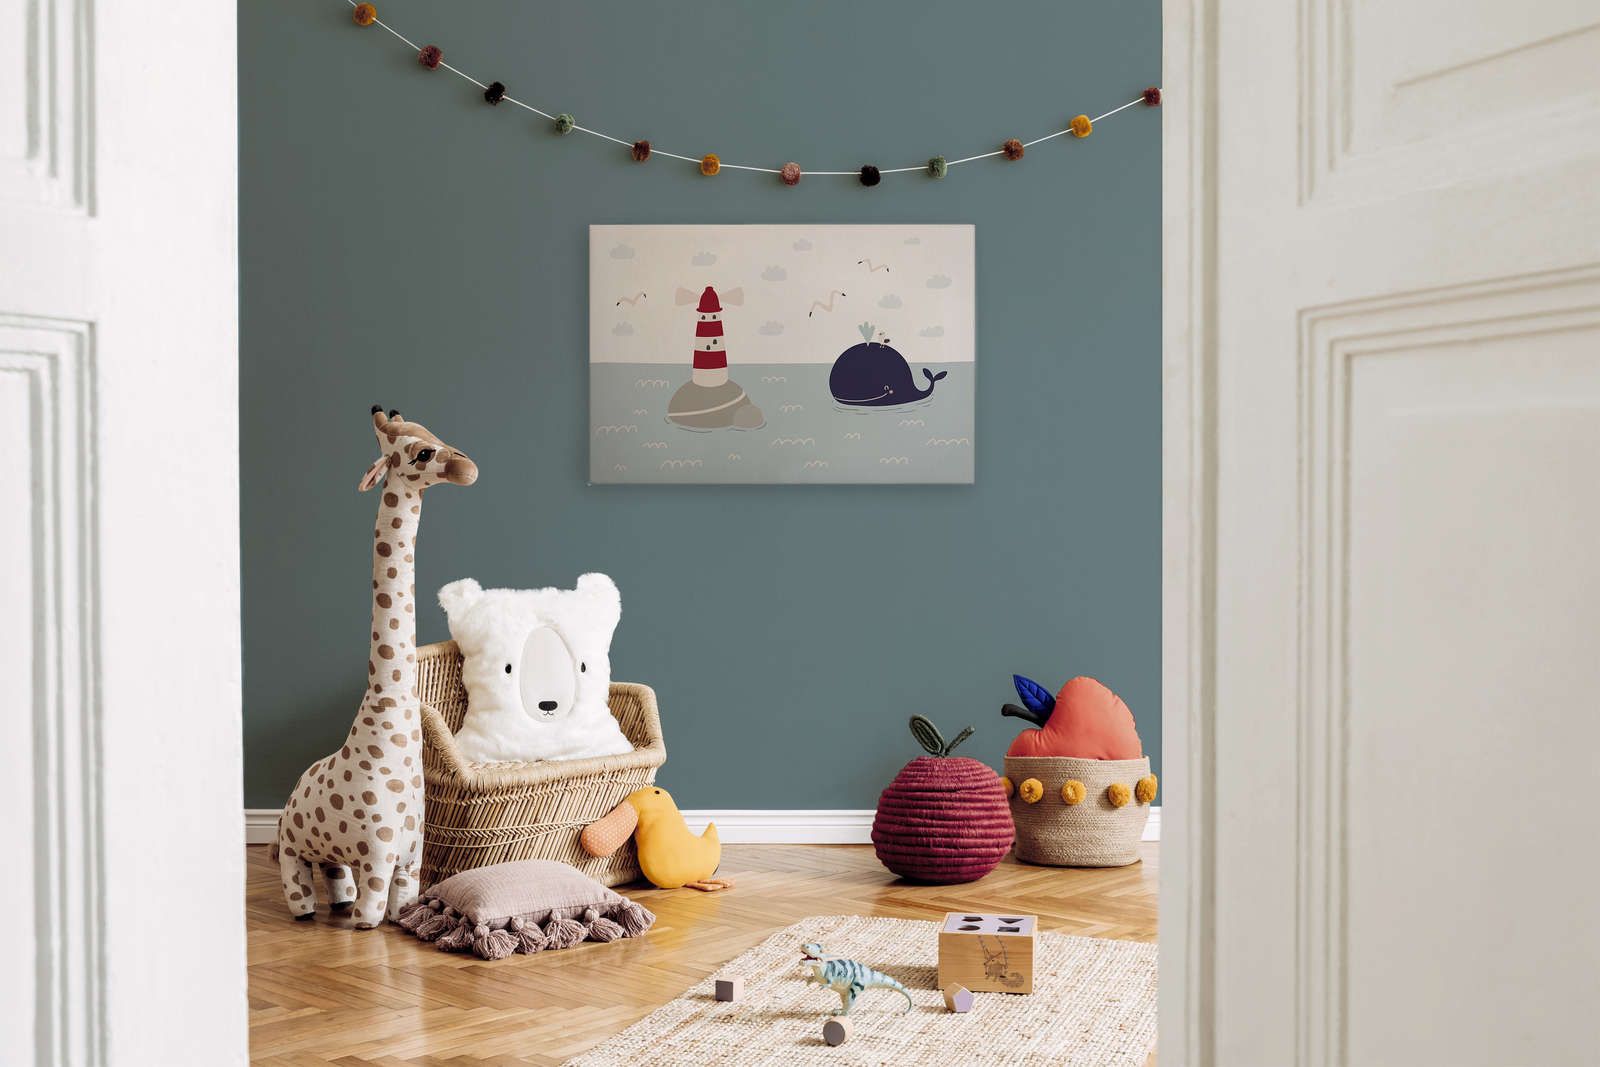             Leinwand fürs Kinderzimmer mit Leuchturm und Wal – 90 cm x 60 cm
        